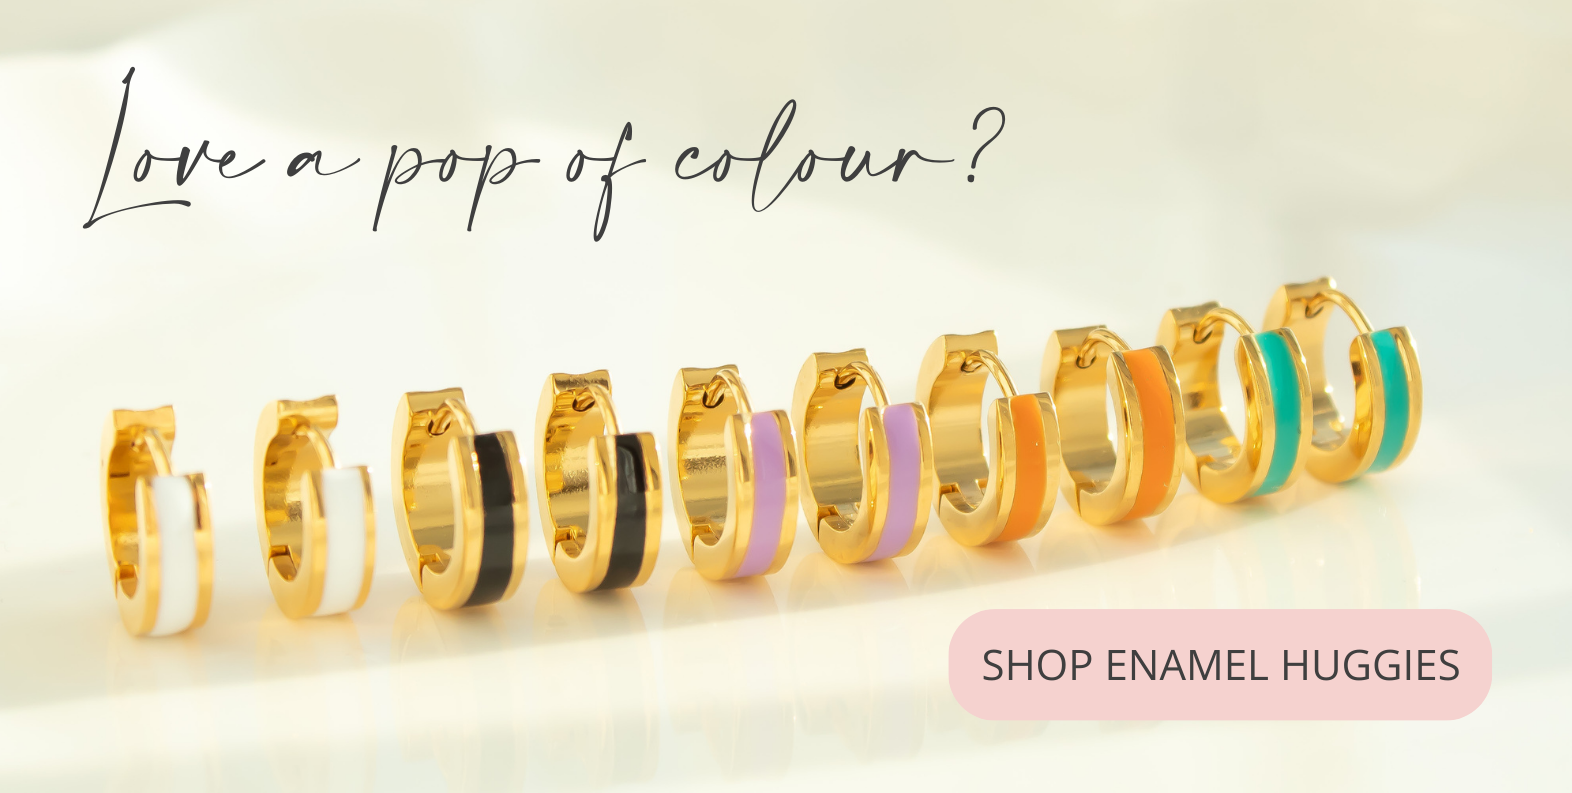 Love a pop of colour? Shop enamel huggies